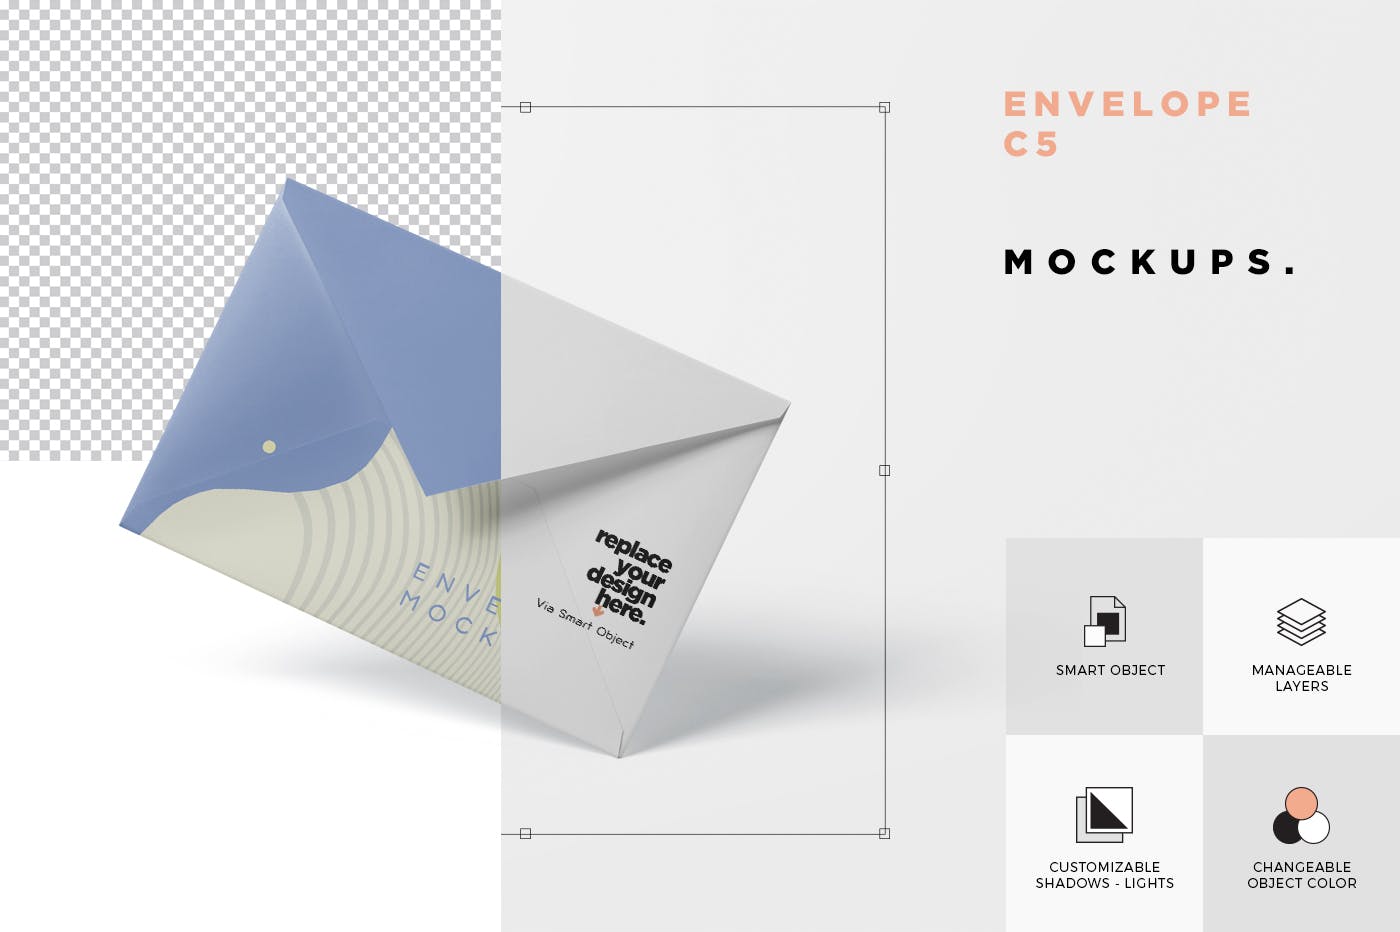 高端企业信封外观设计图蚂蚁素材精选模板 Envelope C5 – C6 Mock-Up Set插图(6)